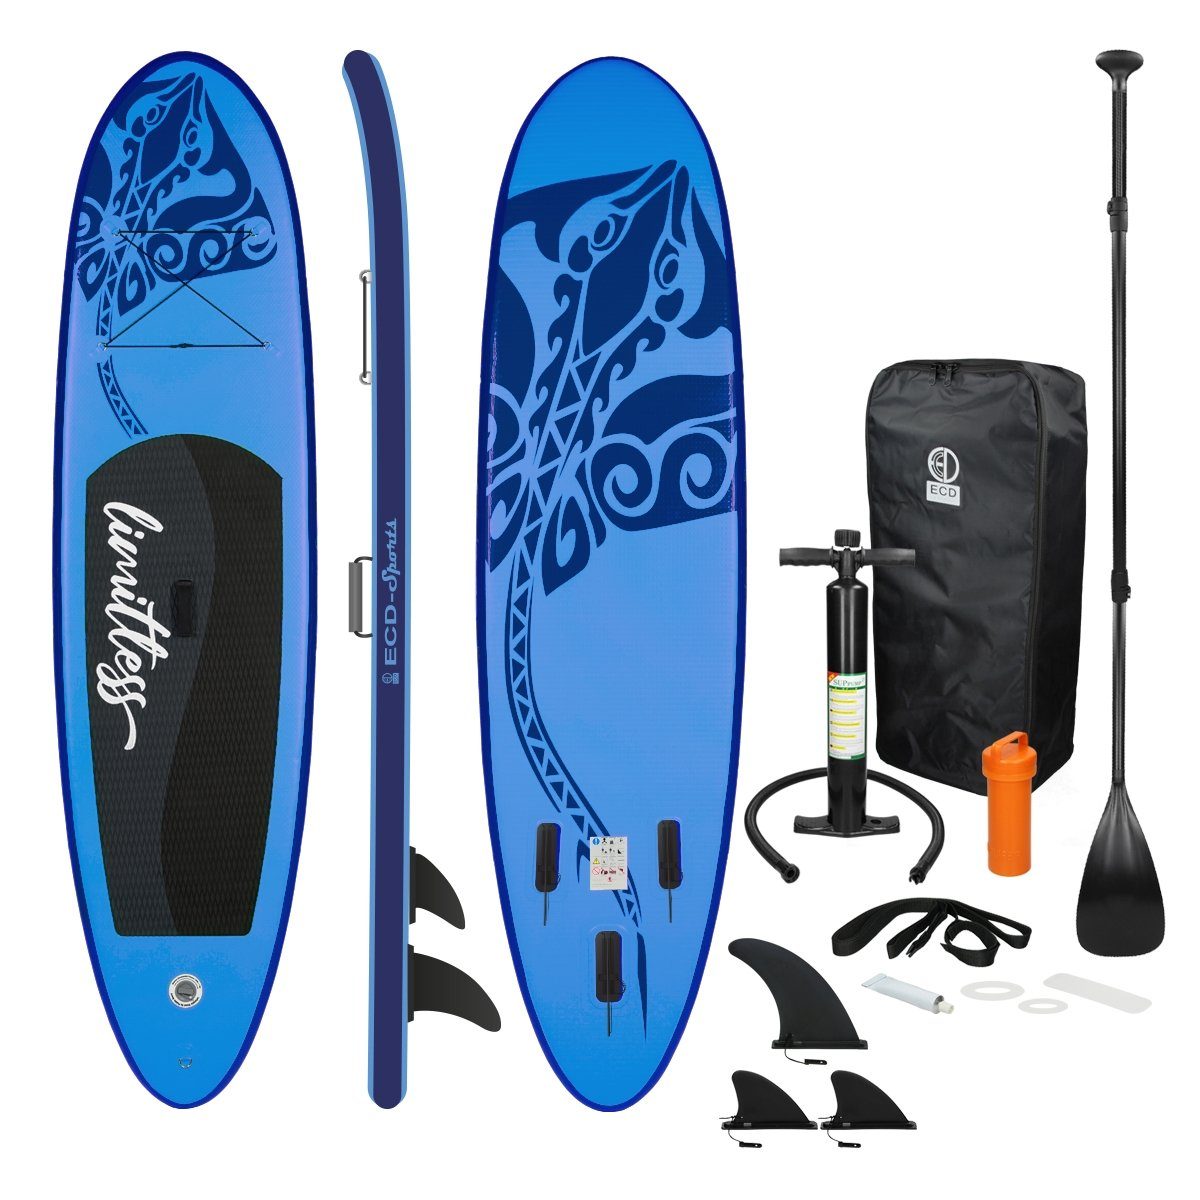 ECD Germany SUP-Board Stand Up Paddle Board aus PVC Paddelboard, Surfboard Blau 308x76x10 cm mit Anti-Rutsch Belag Komplett Set